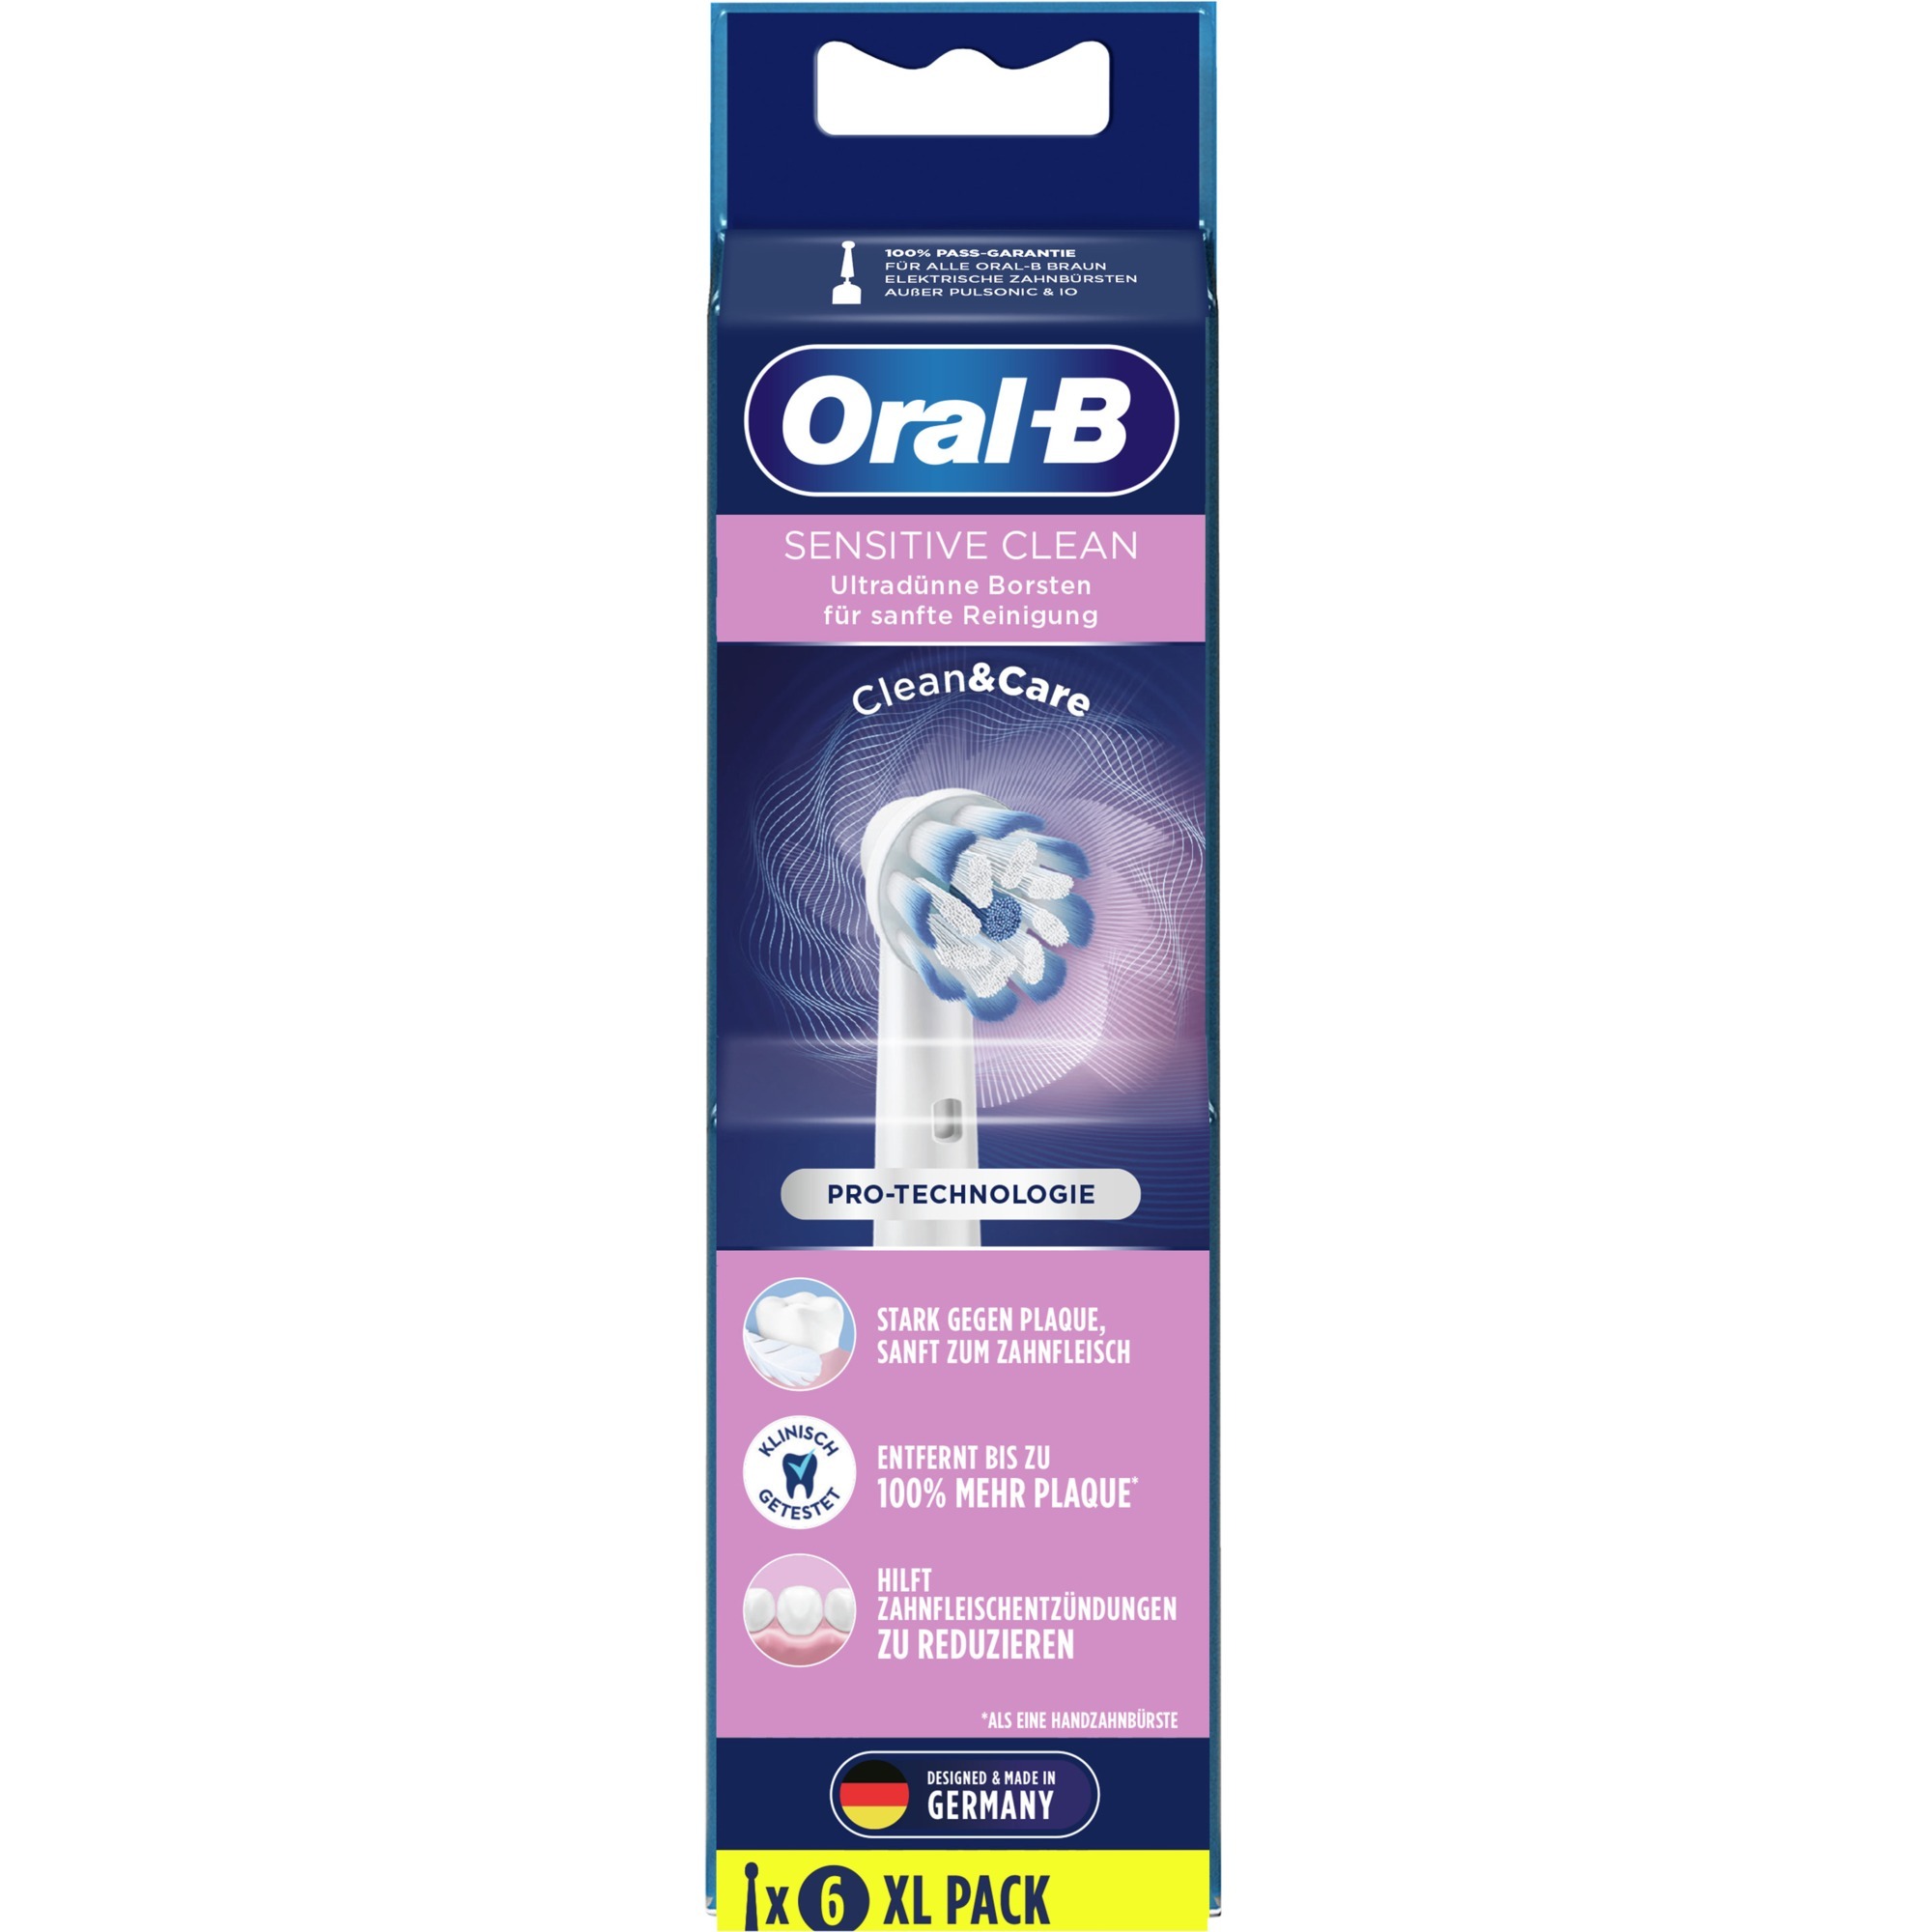 Image of Alternate - Oral-B Sensitive Clean 6er, Aufsteckbürste online einkaufen bei Alternate